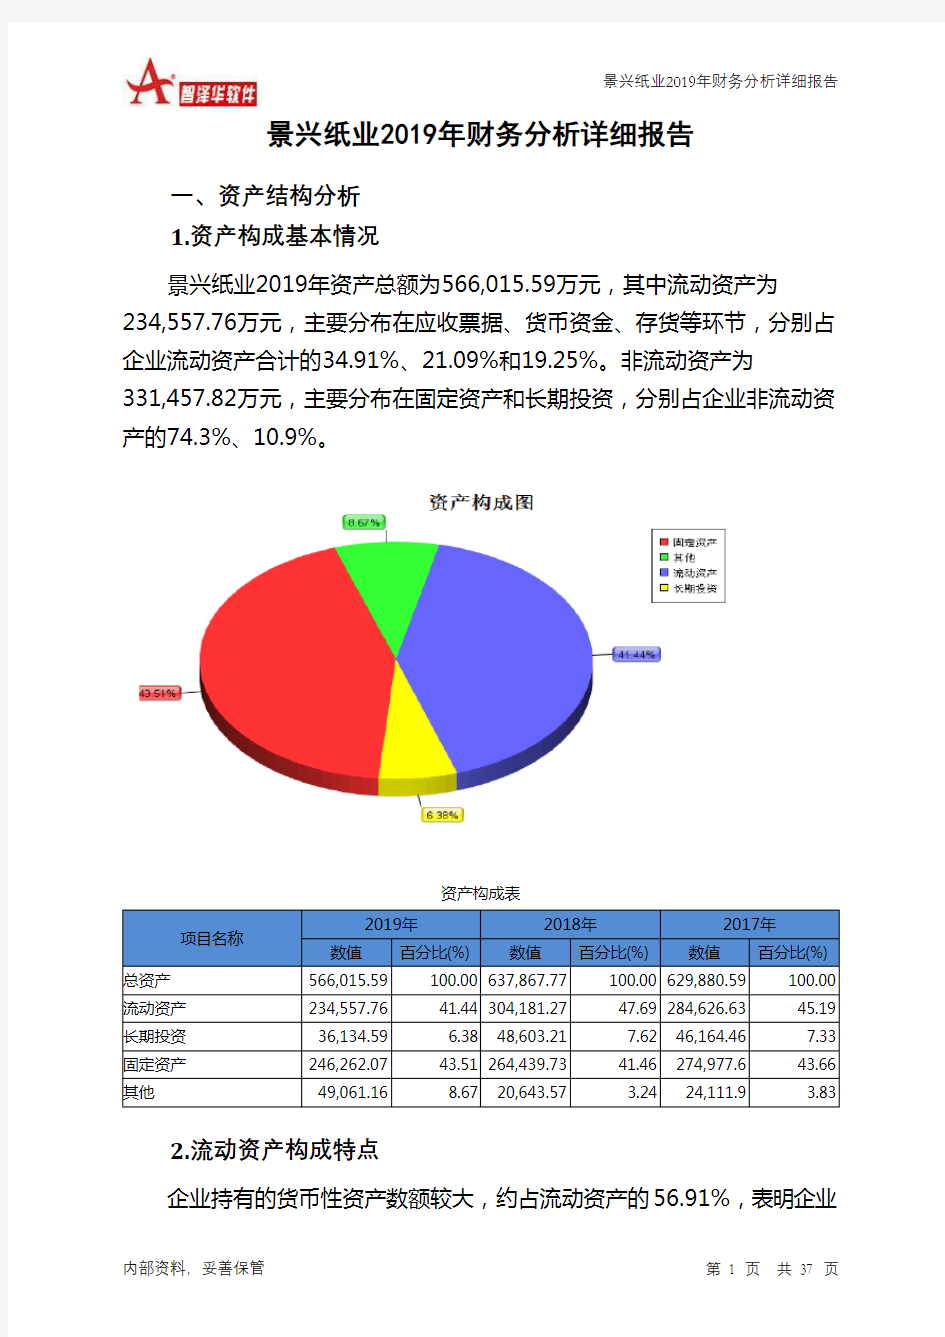 景兴纸业2019年财务分析详细报告